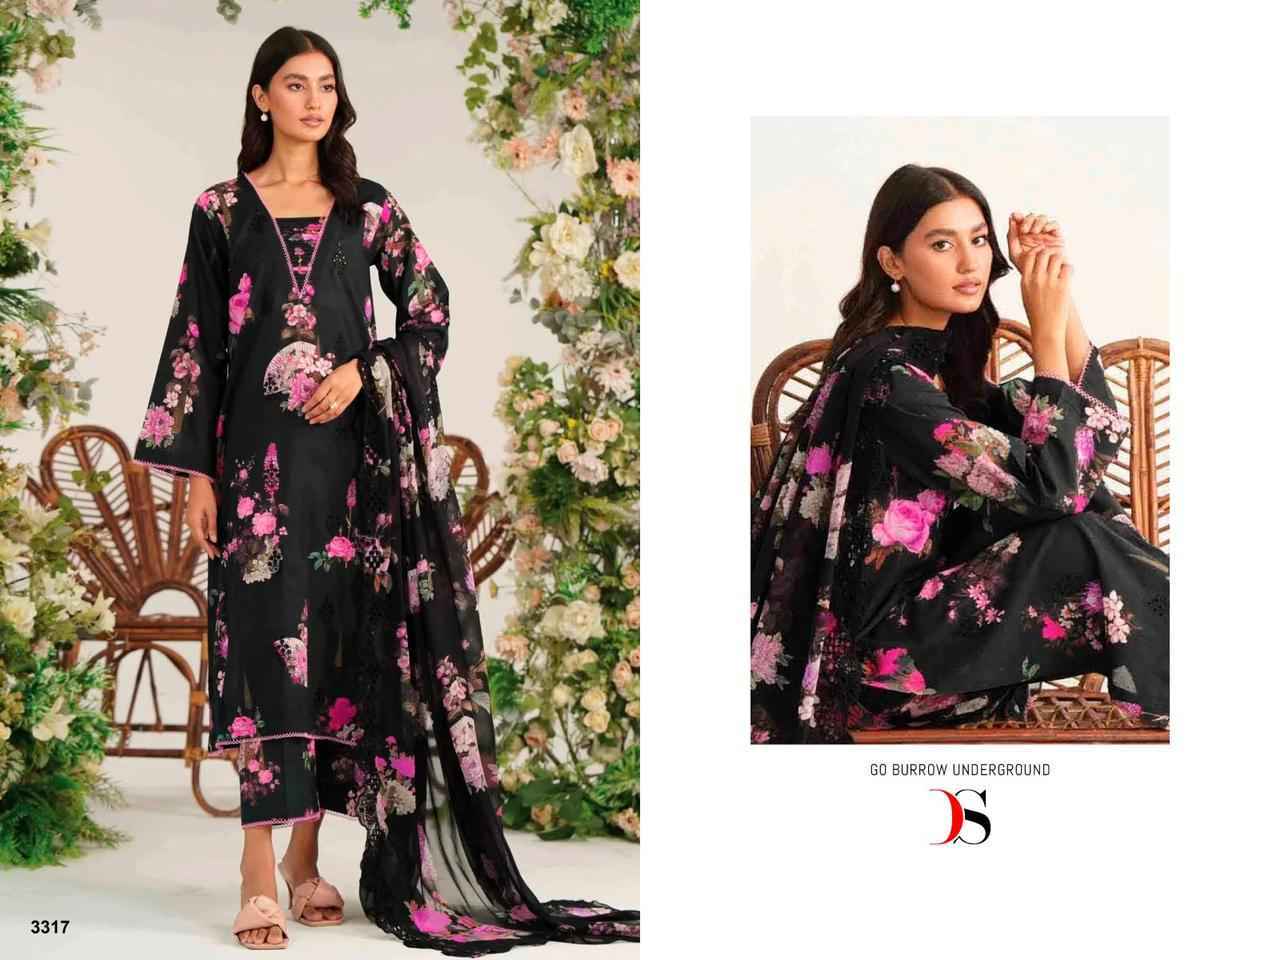 Deepsy Charizma Range Bahar Pashmina Dress Material 8 pcs Catalogue